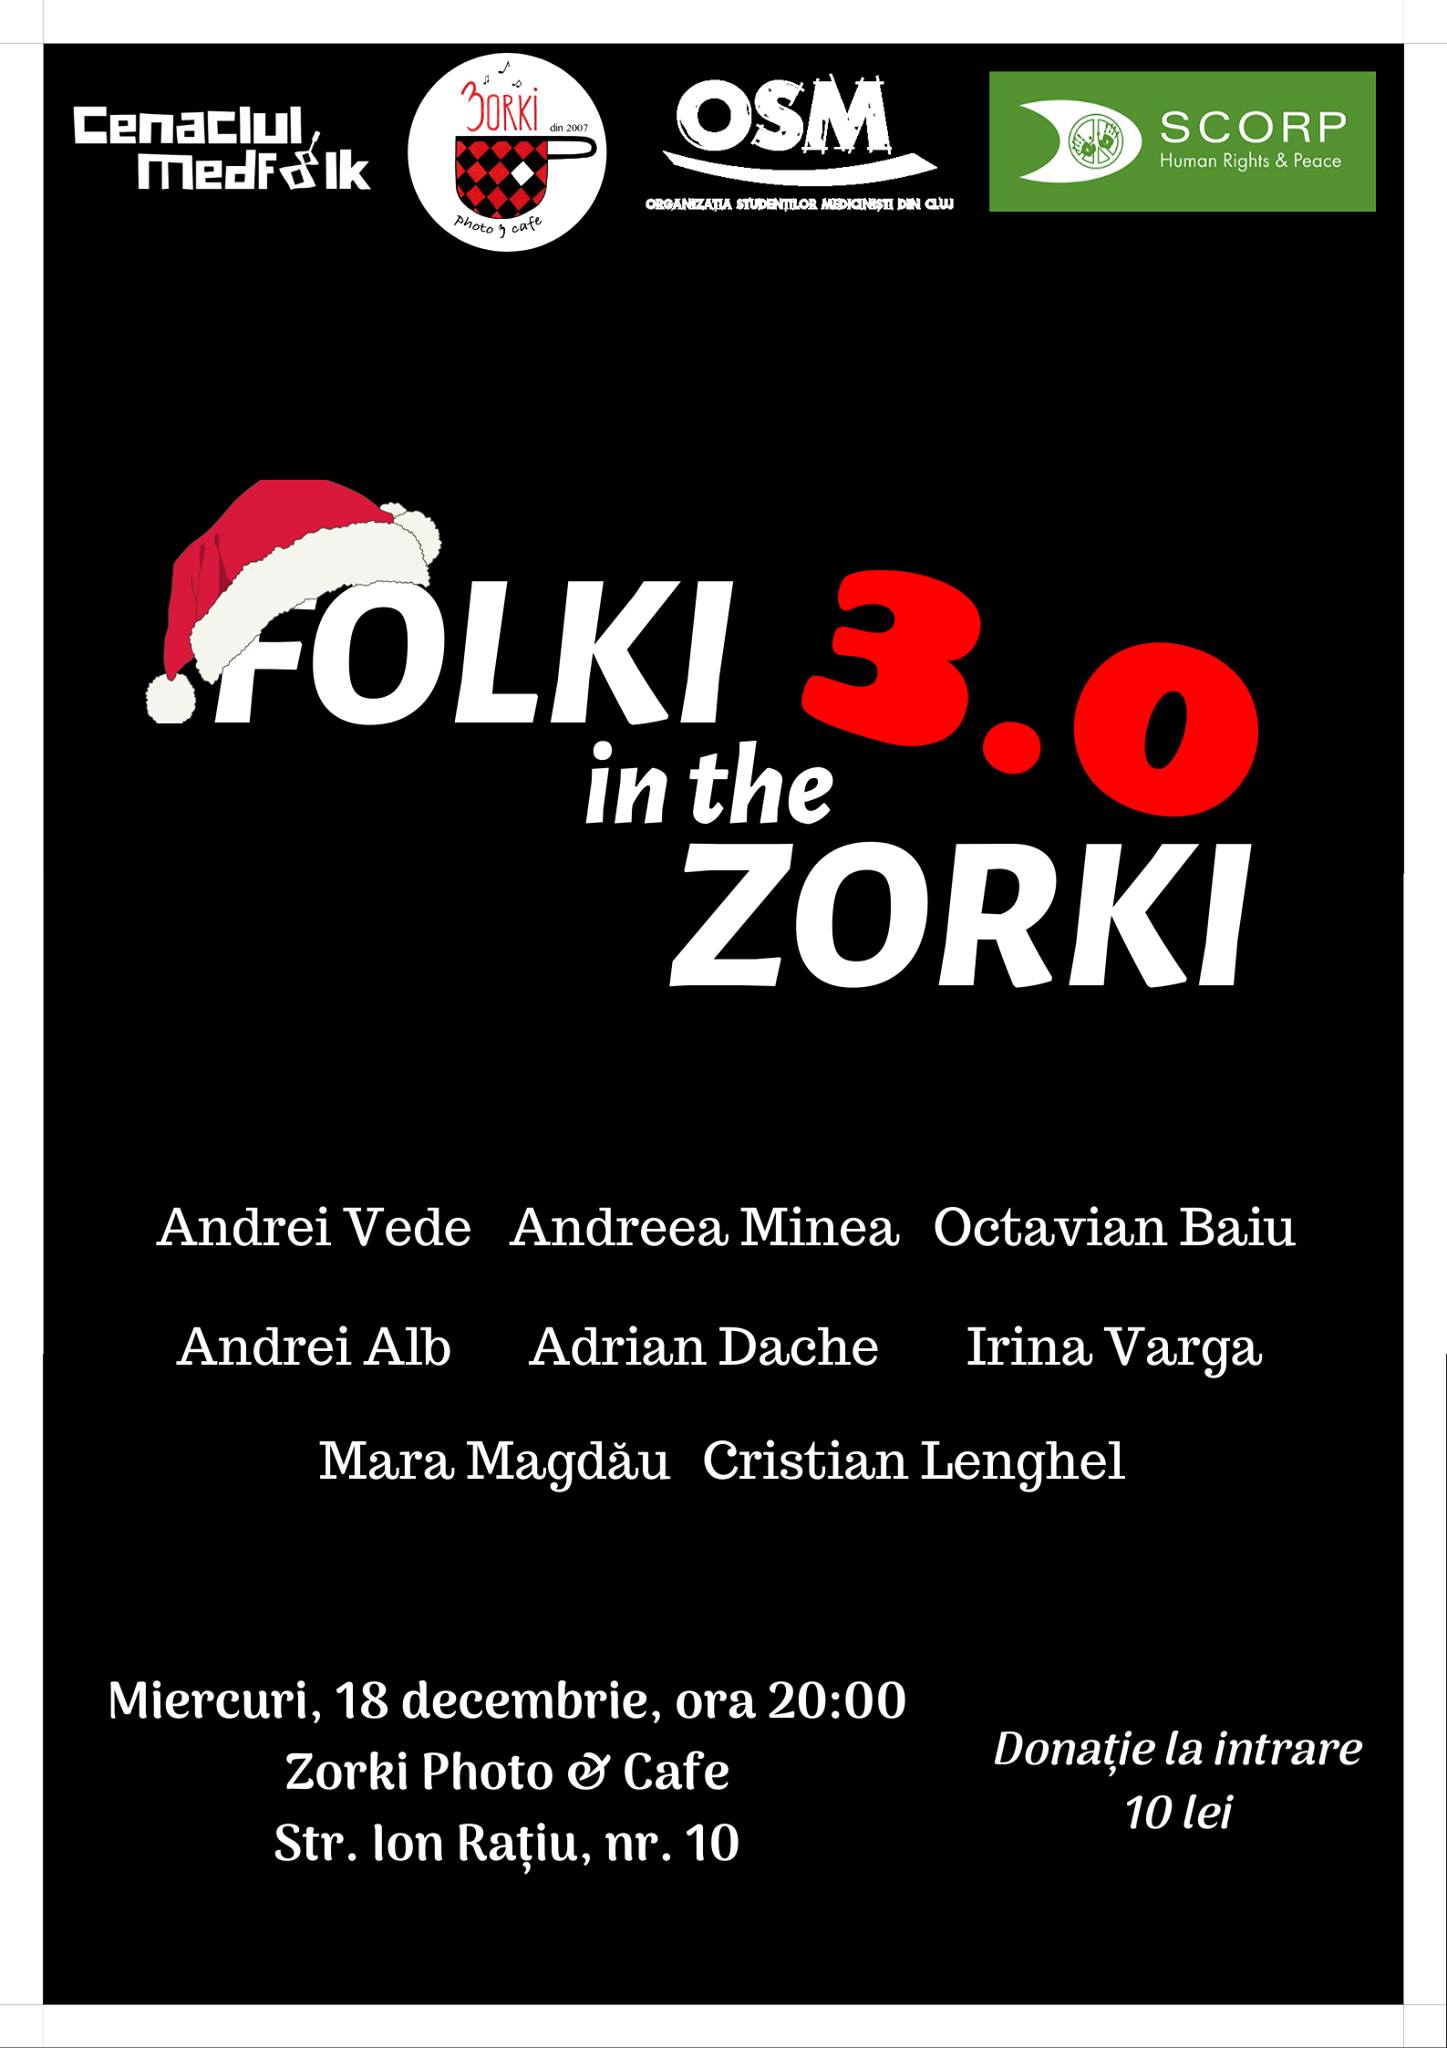 Folki in the Zorki 3.0 – Cenaclul MedFolk